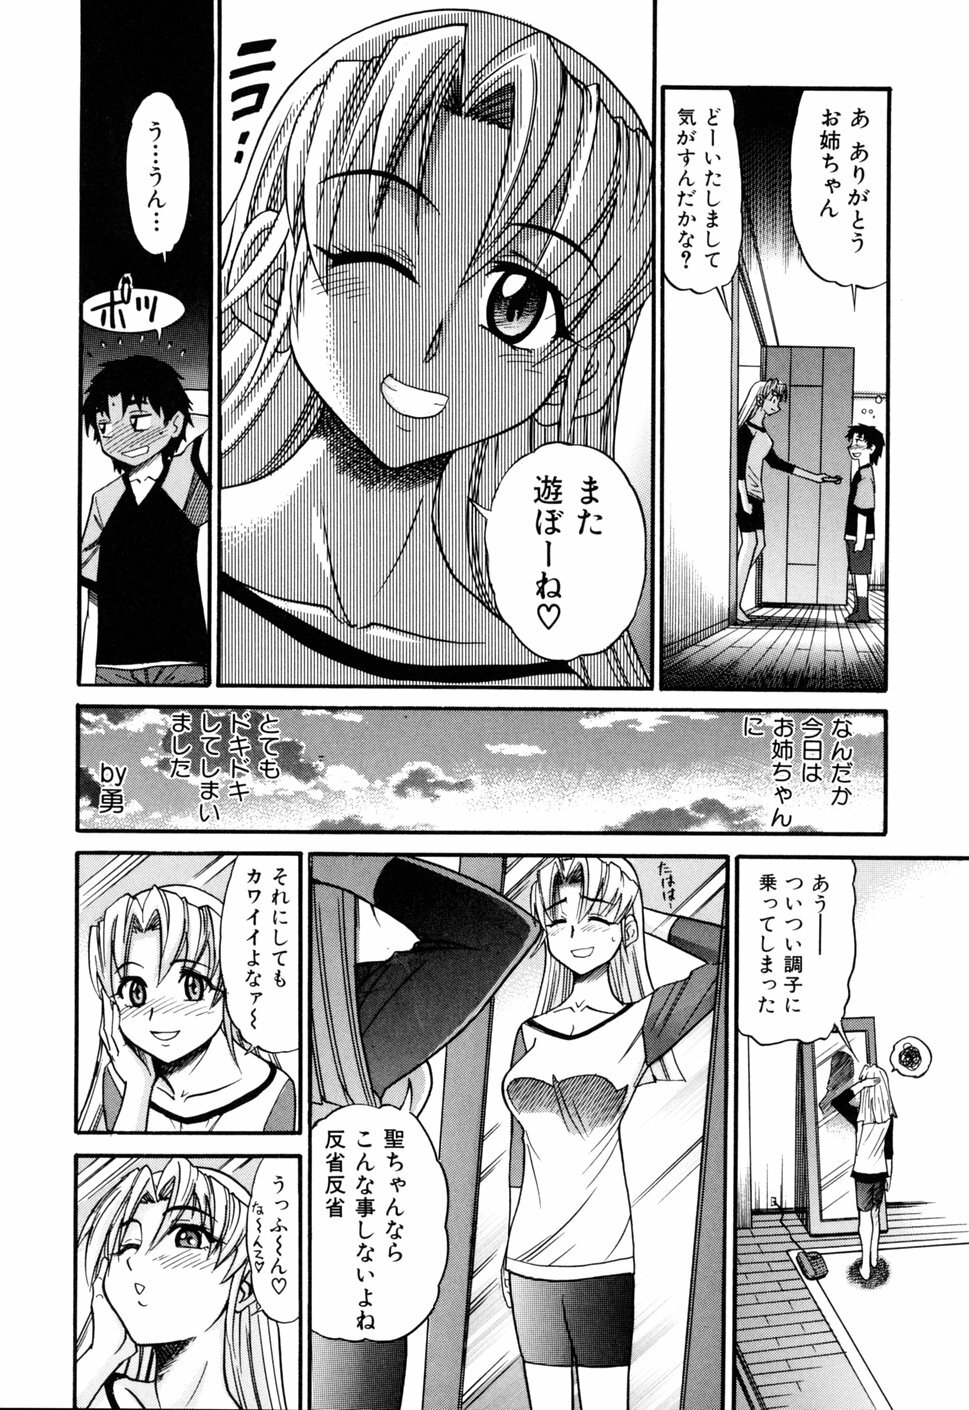 [DISTANCE] Ochiru Tenshi Vol. 1 page 19 full